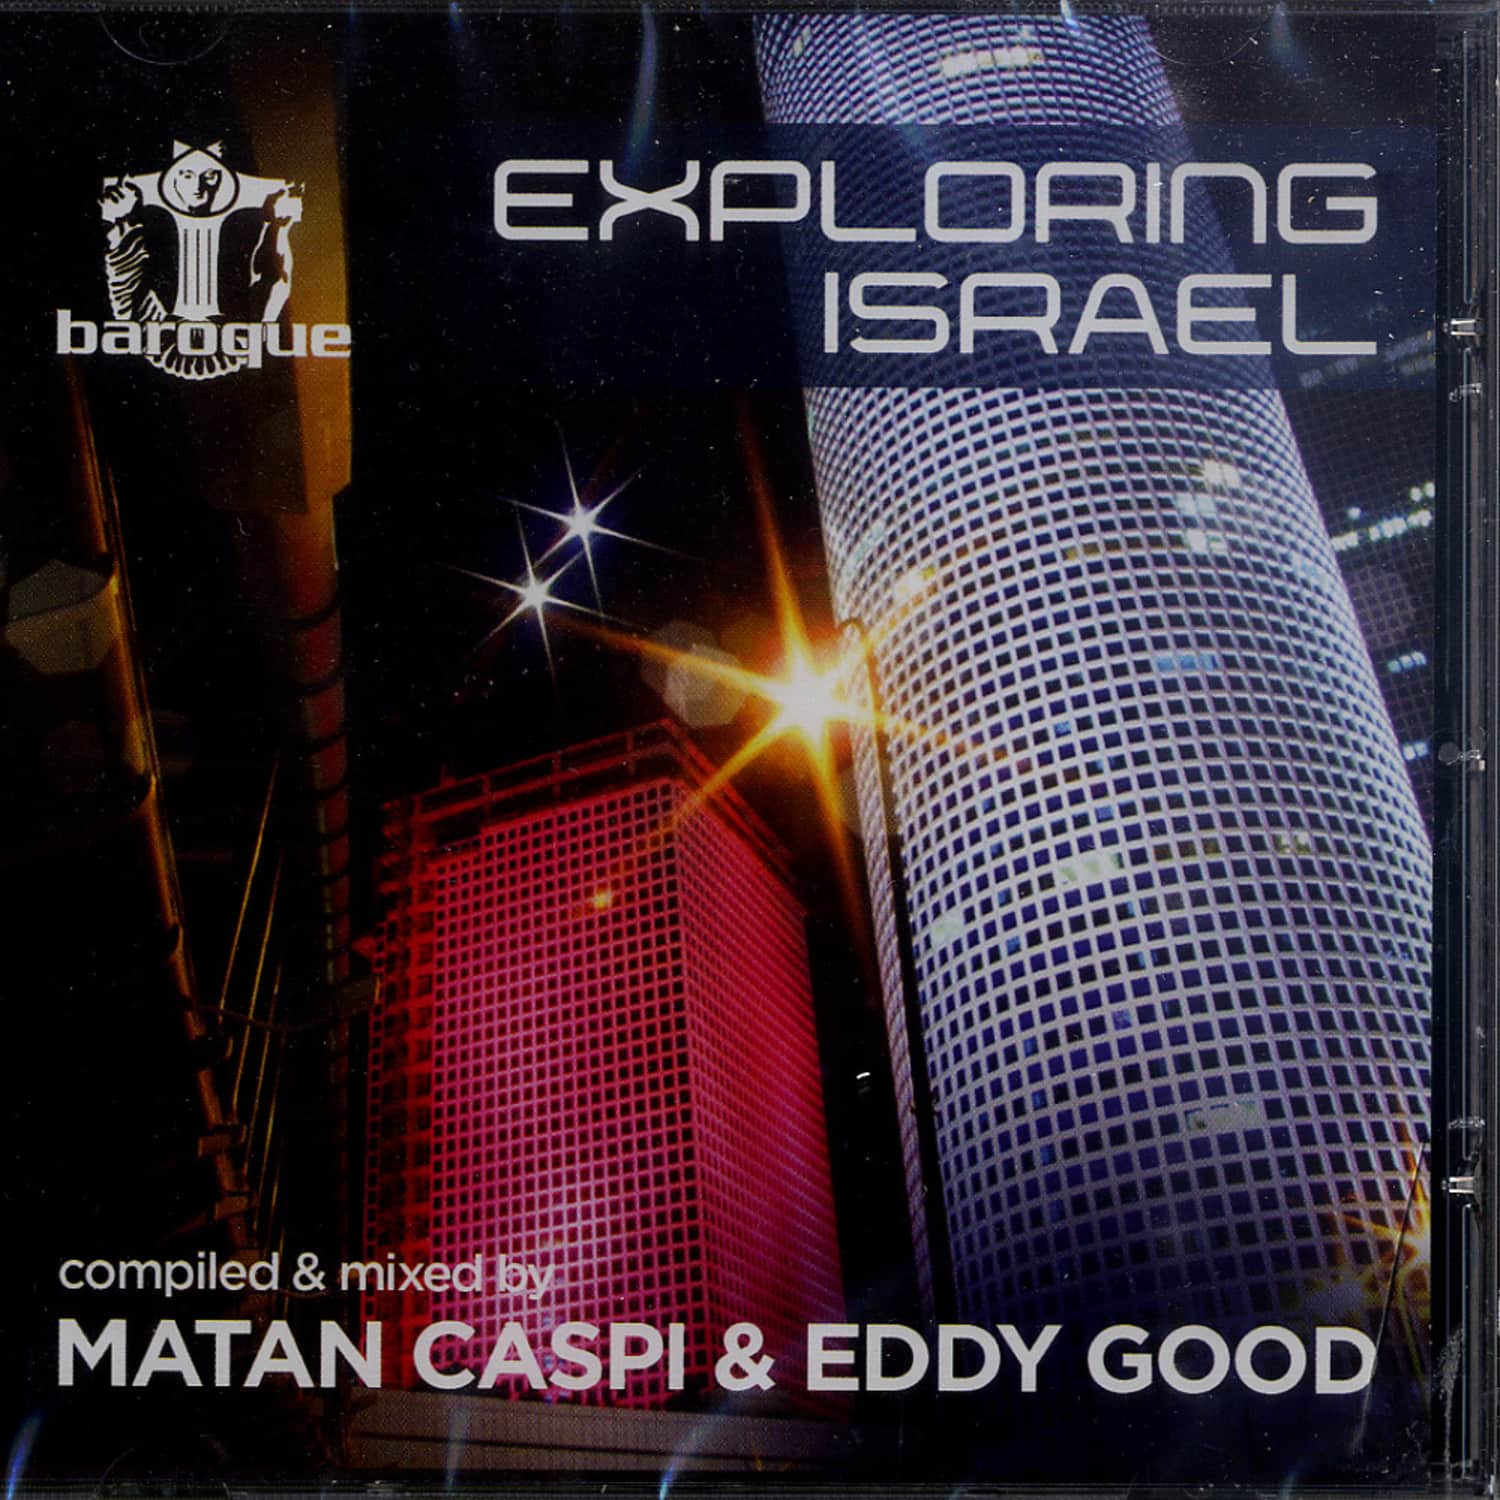 Matan Capsi & Eddie Good - EXPLORING ISRAEL 